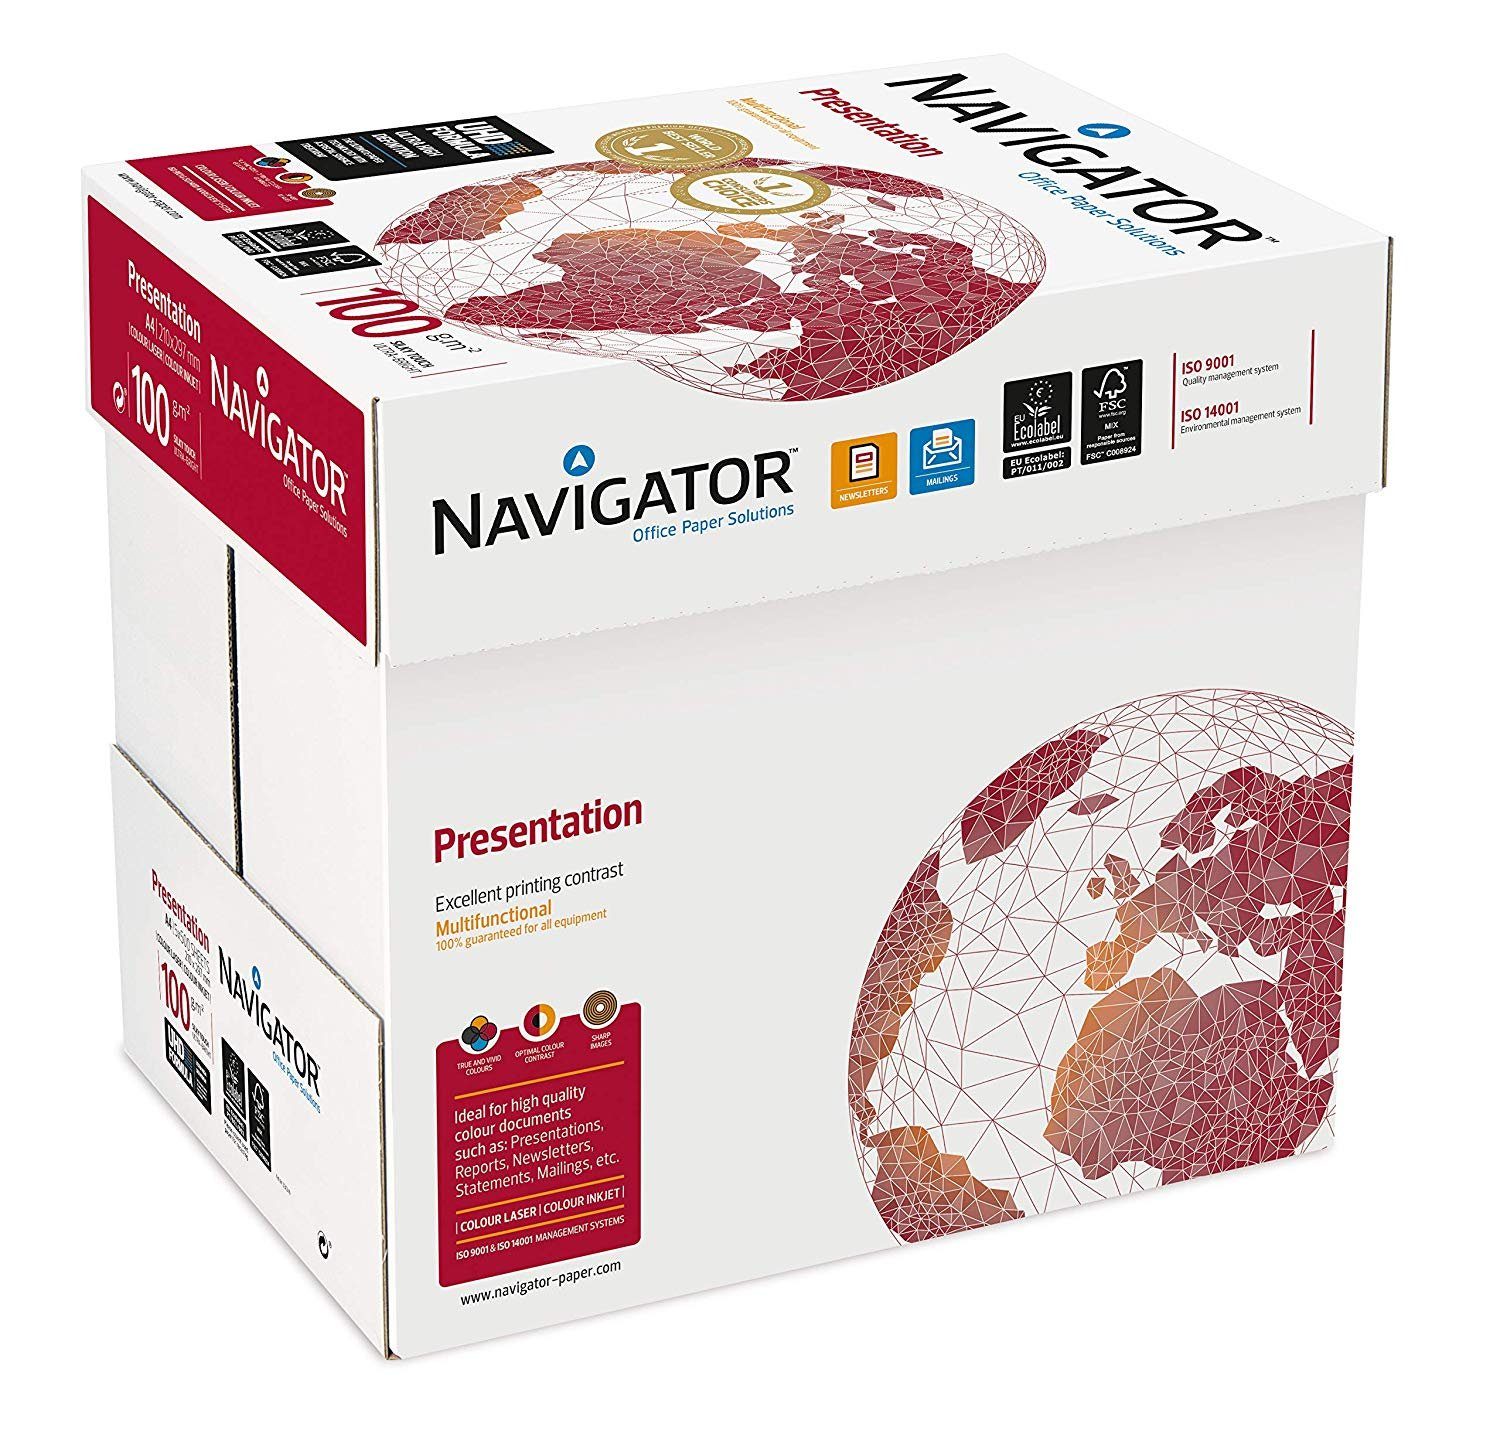 NAVIGATOR Drucker- Presentation und 2500 - Kopierpapier Blatt DIN-A4 100g/m² weiß Navigator